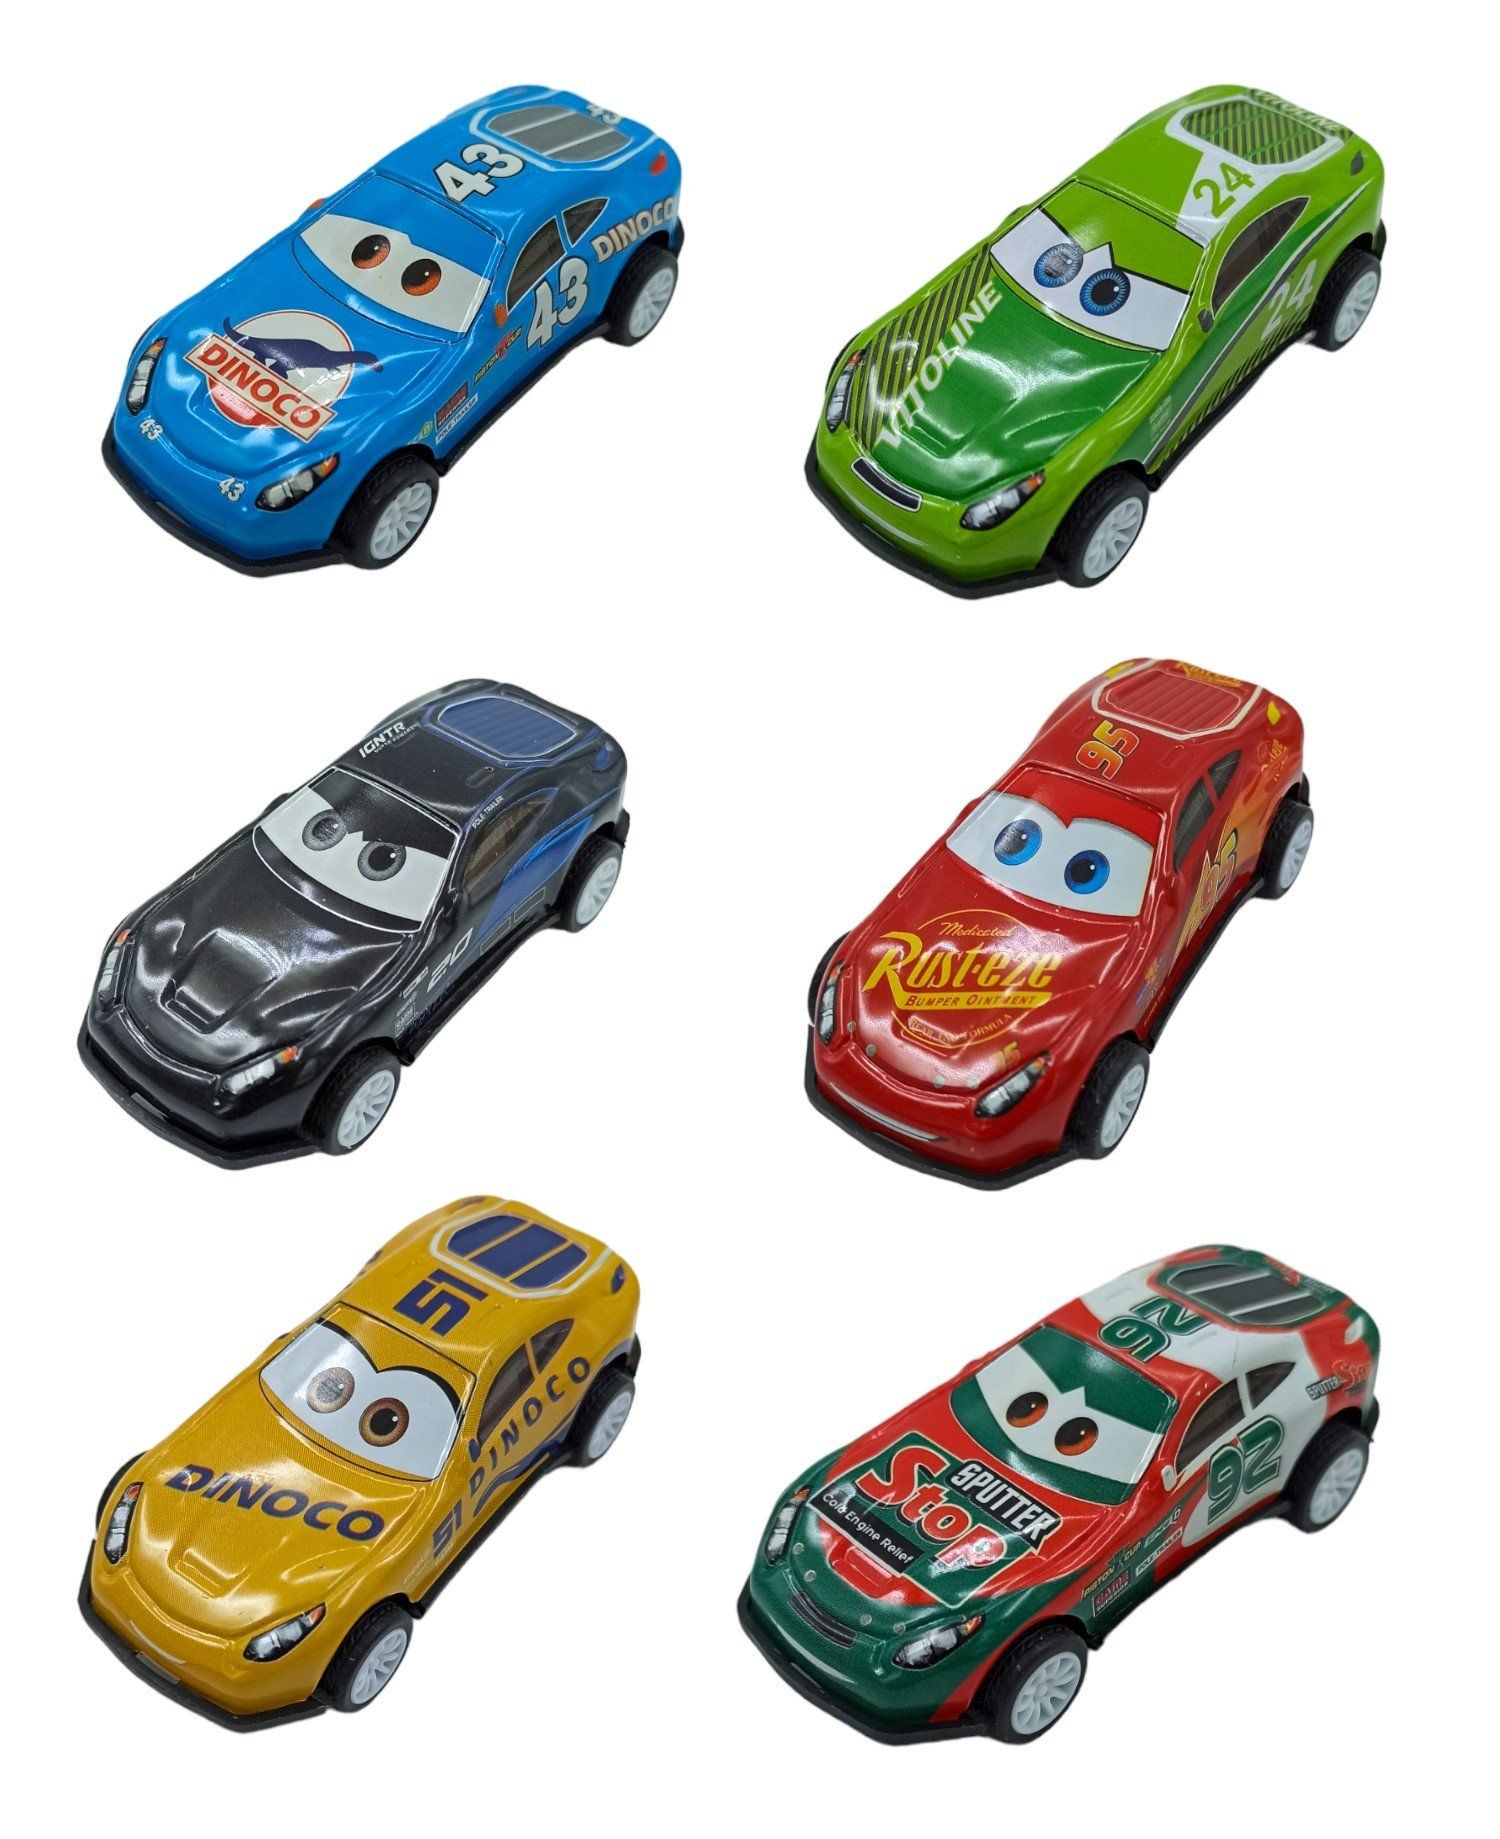 Cars Şimşek Mcqueen Metal Spor Araba Seti Çek Bırak Cars Oyuncakları 6'lı